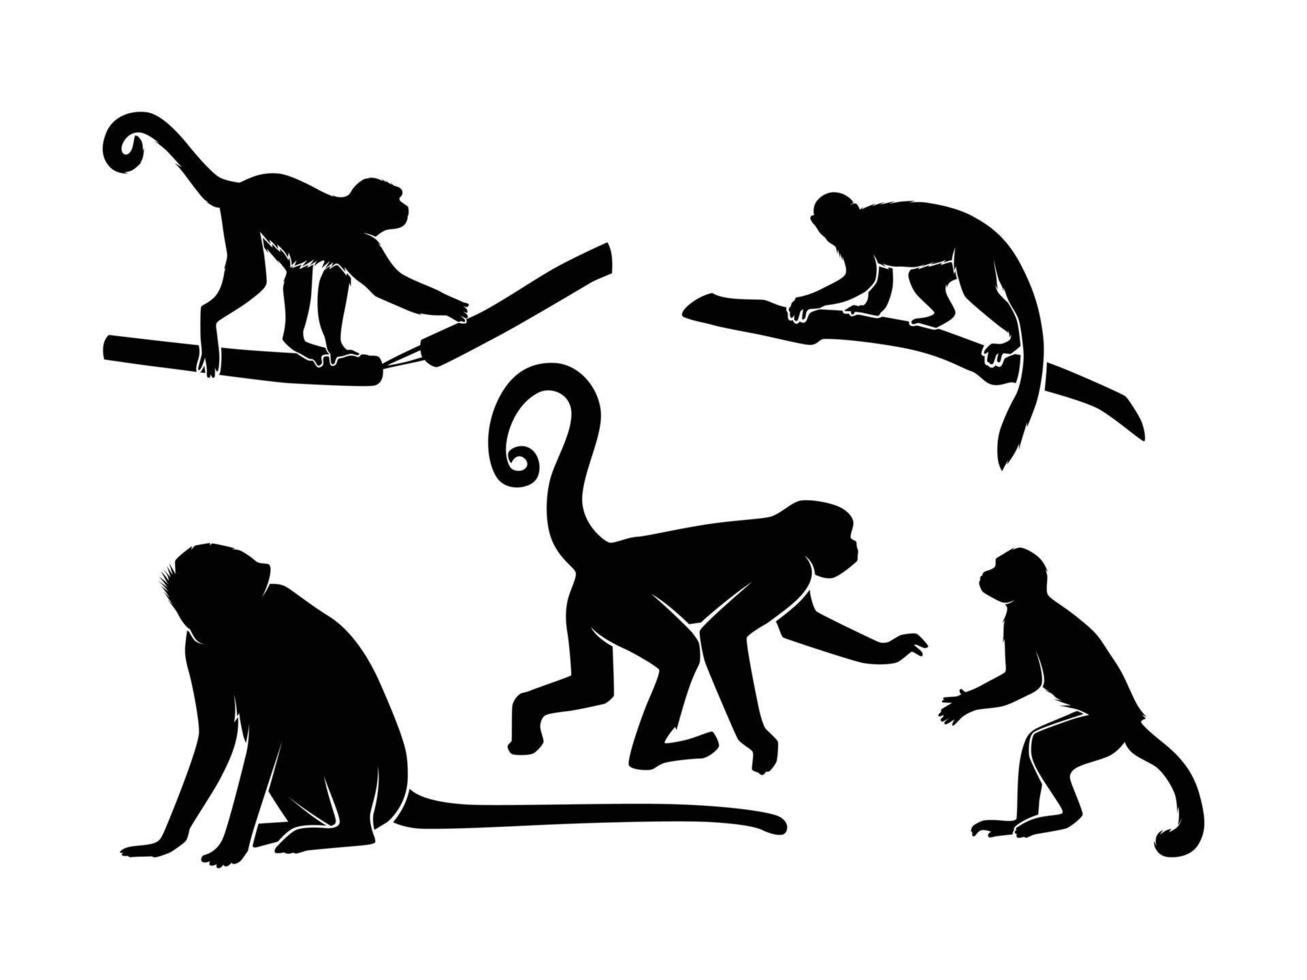 ensemble de silhouette de singes isolé sur fond blanc - illustration vectorielle vecteur